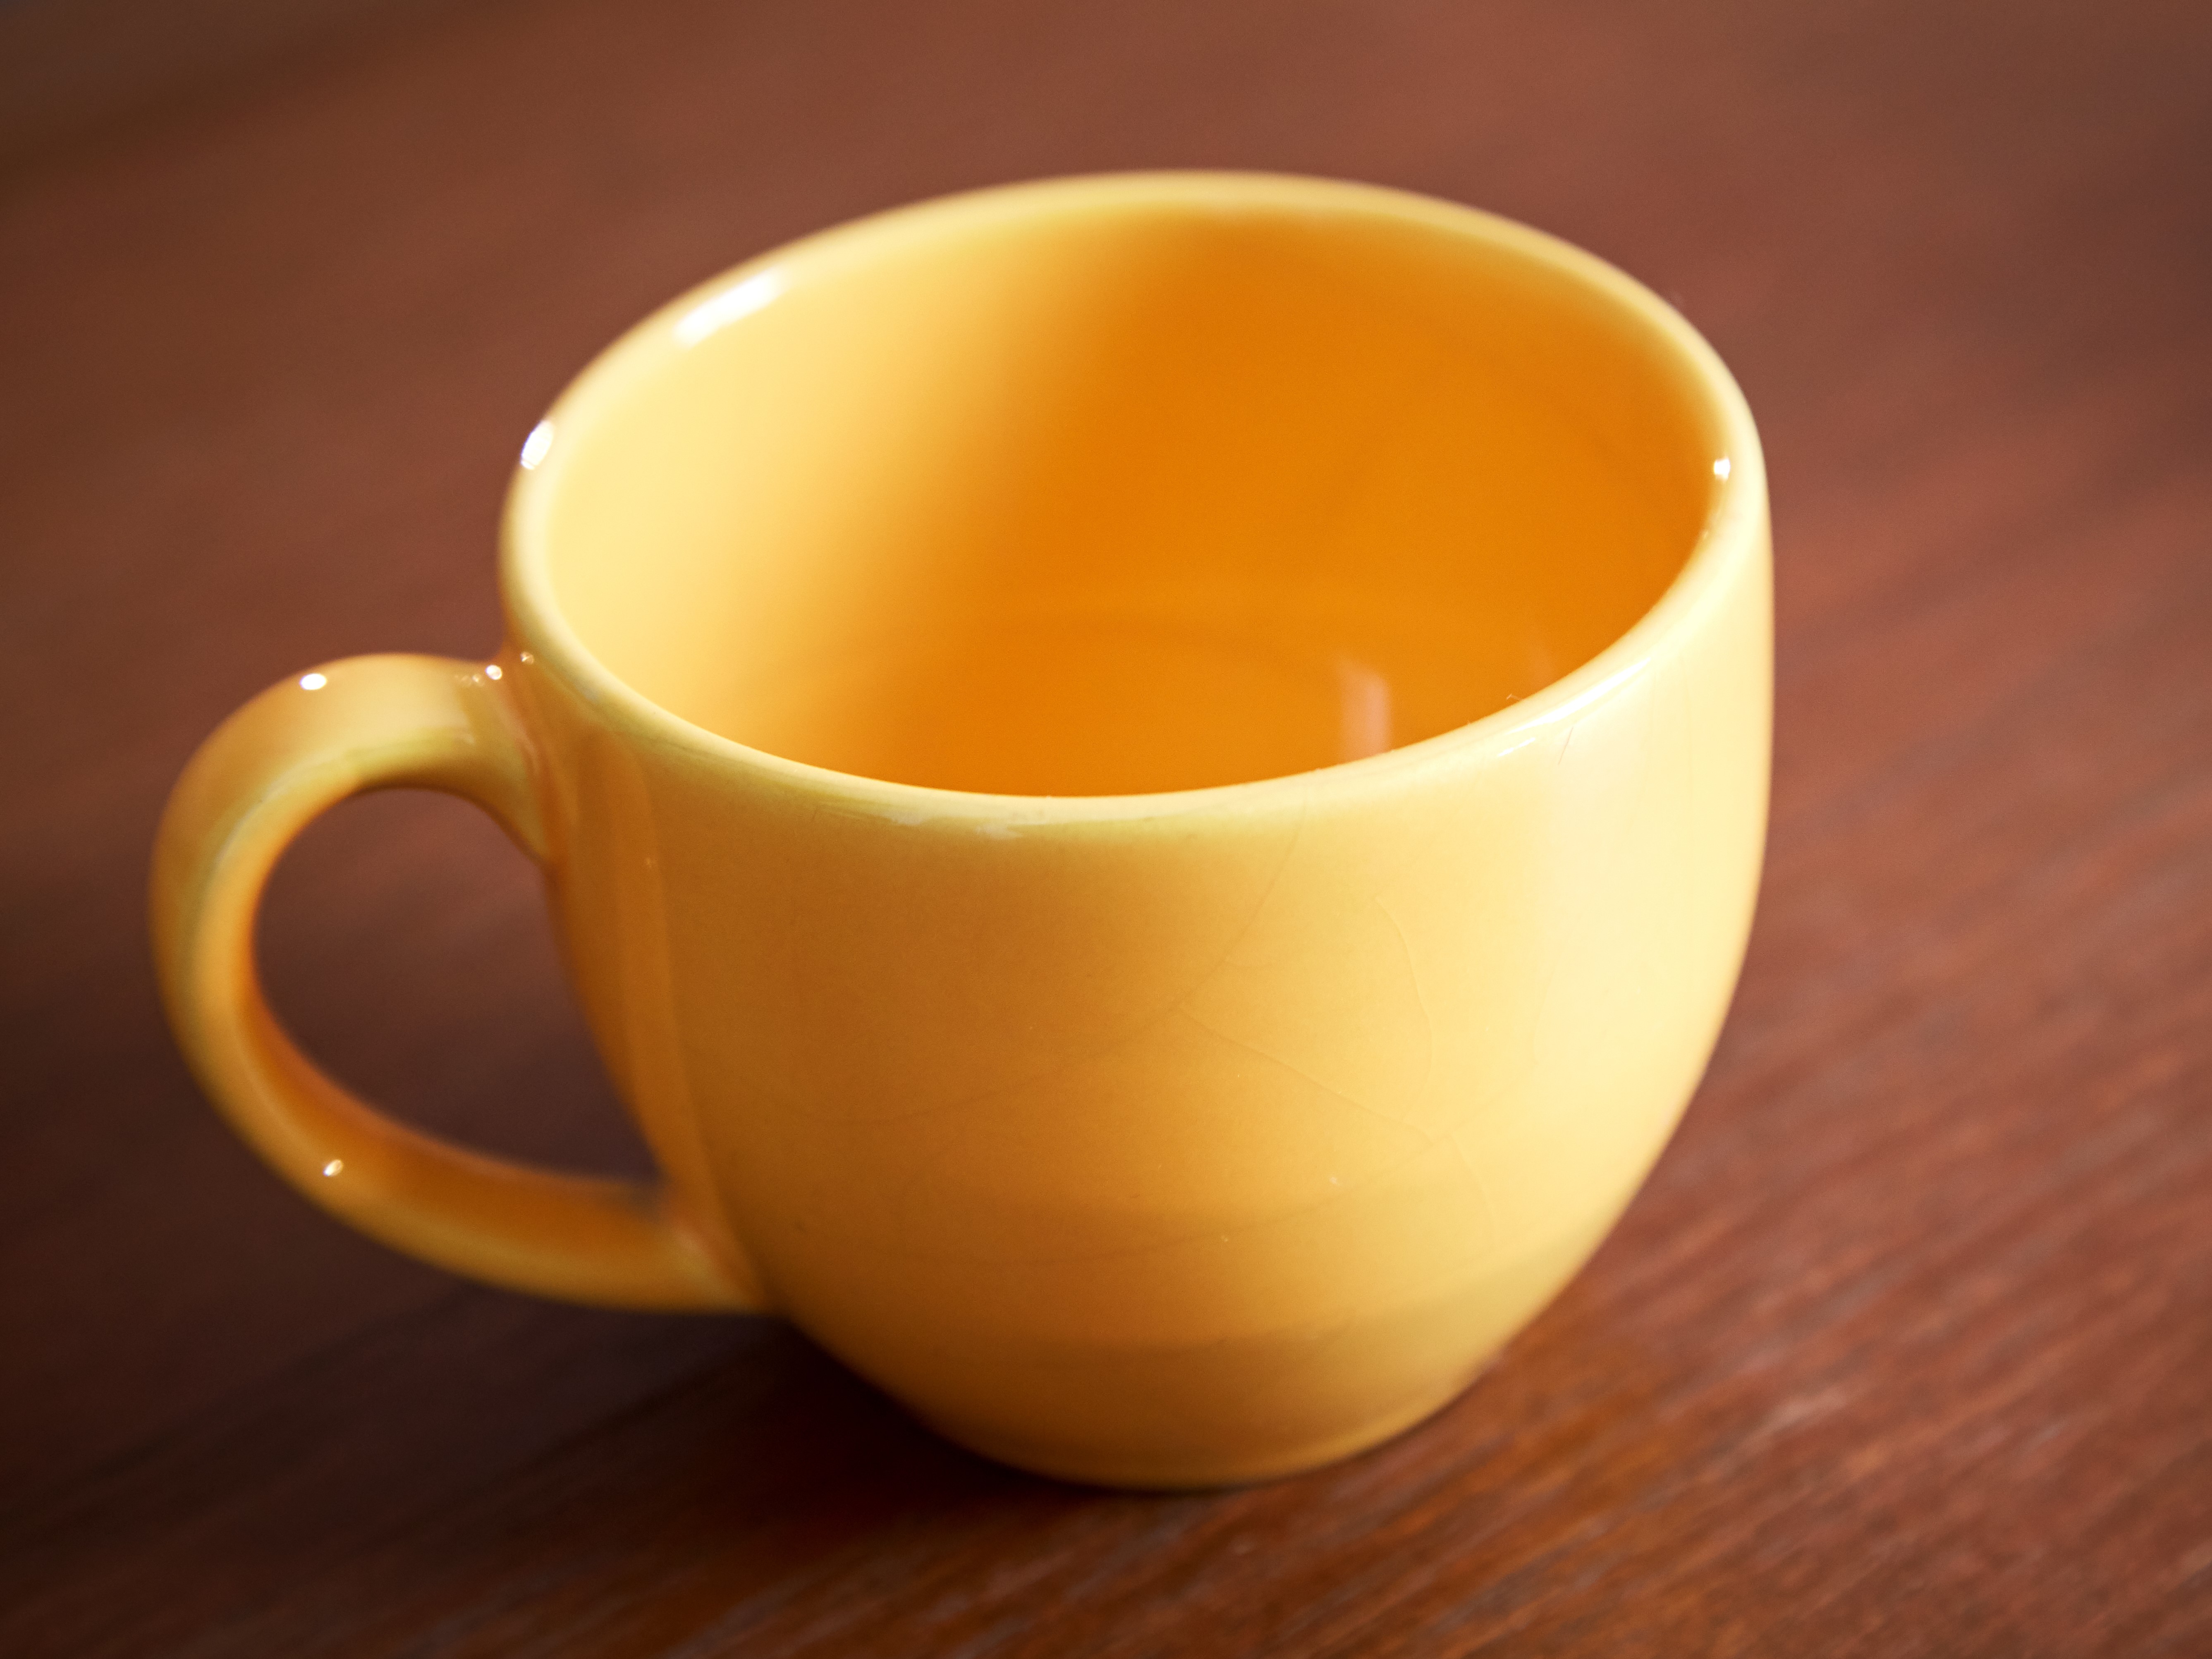 Empty yellow ceramic mug on wood surface 